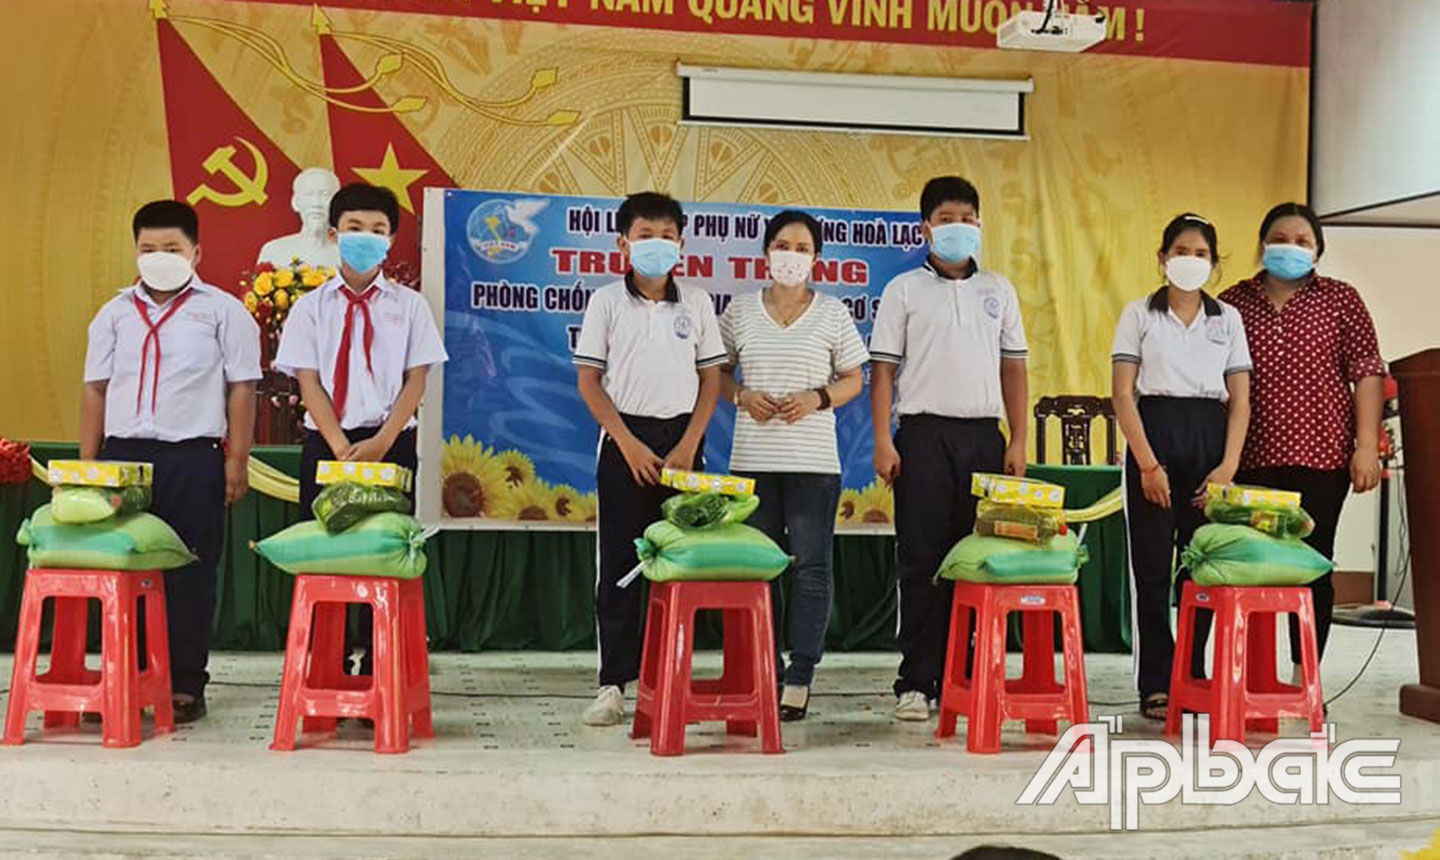 Hội LHPN xã Lương Hòa Lạc tổ chức truyền thông phòng, chống BLGĐ trên cơ sở giới và trao quà cho học sinh khó khăn.